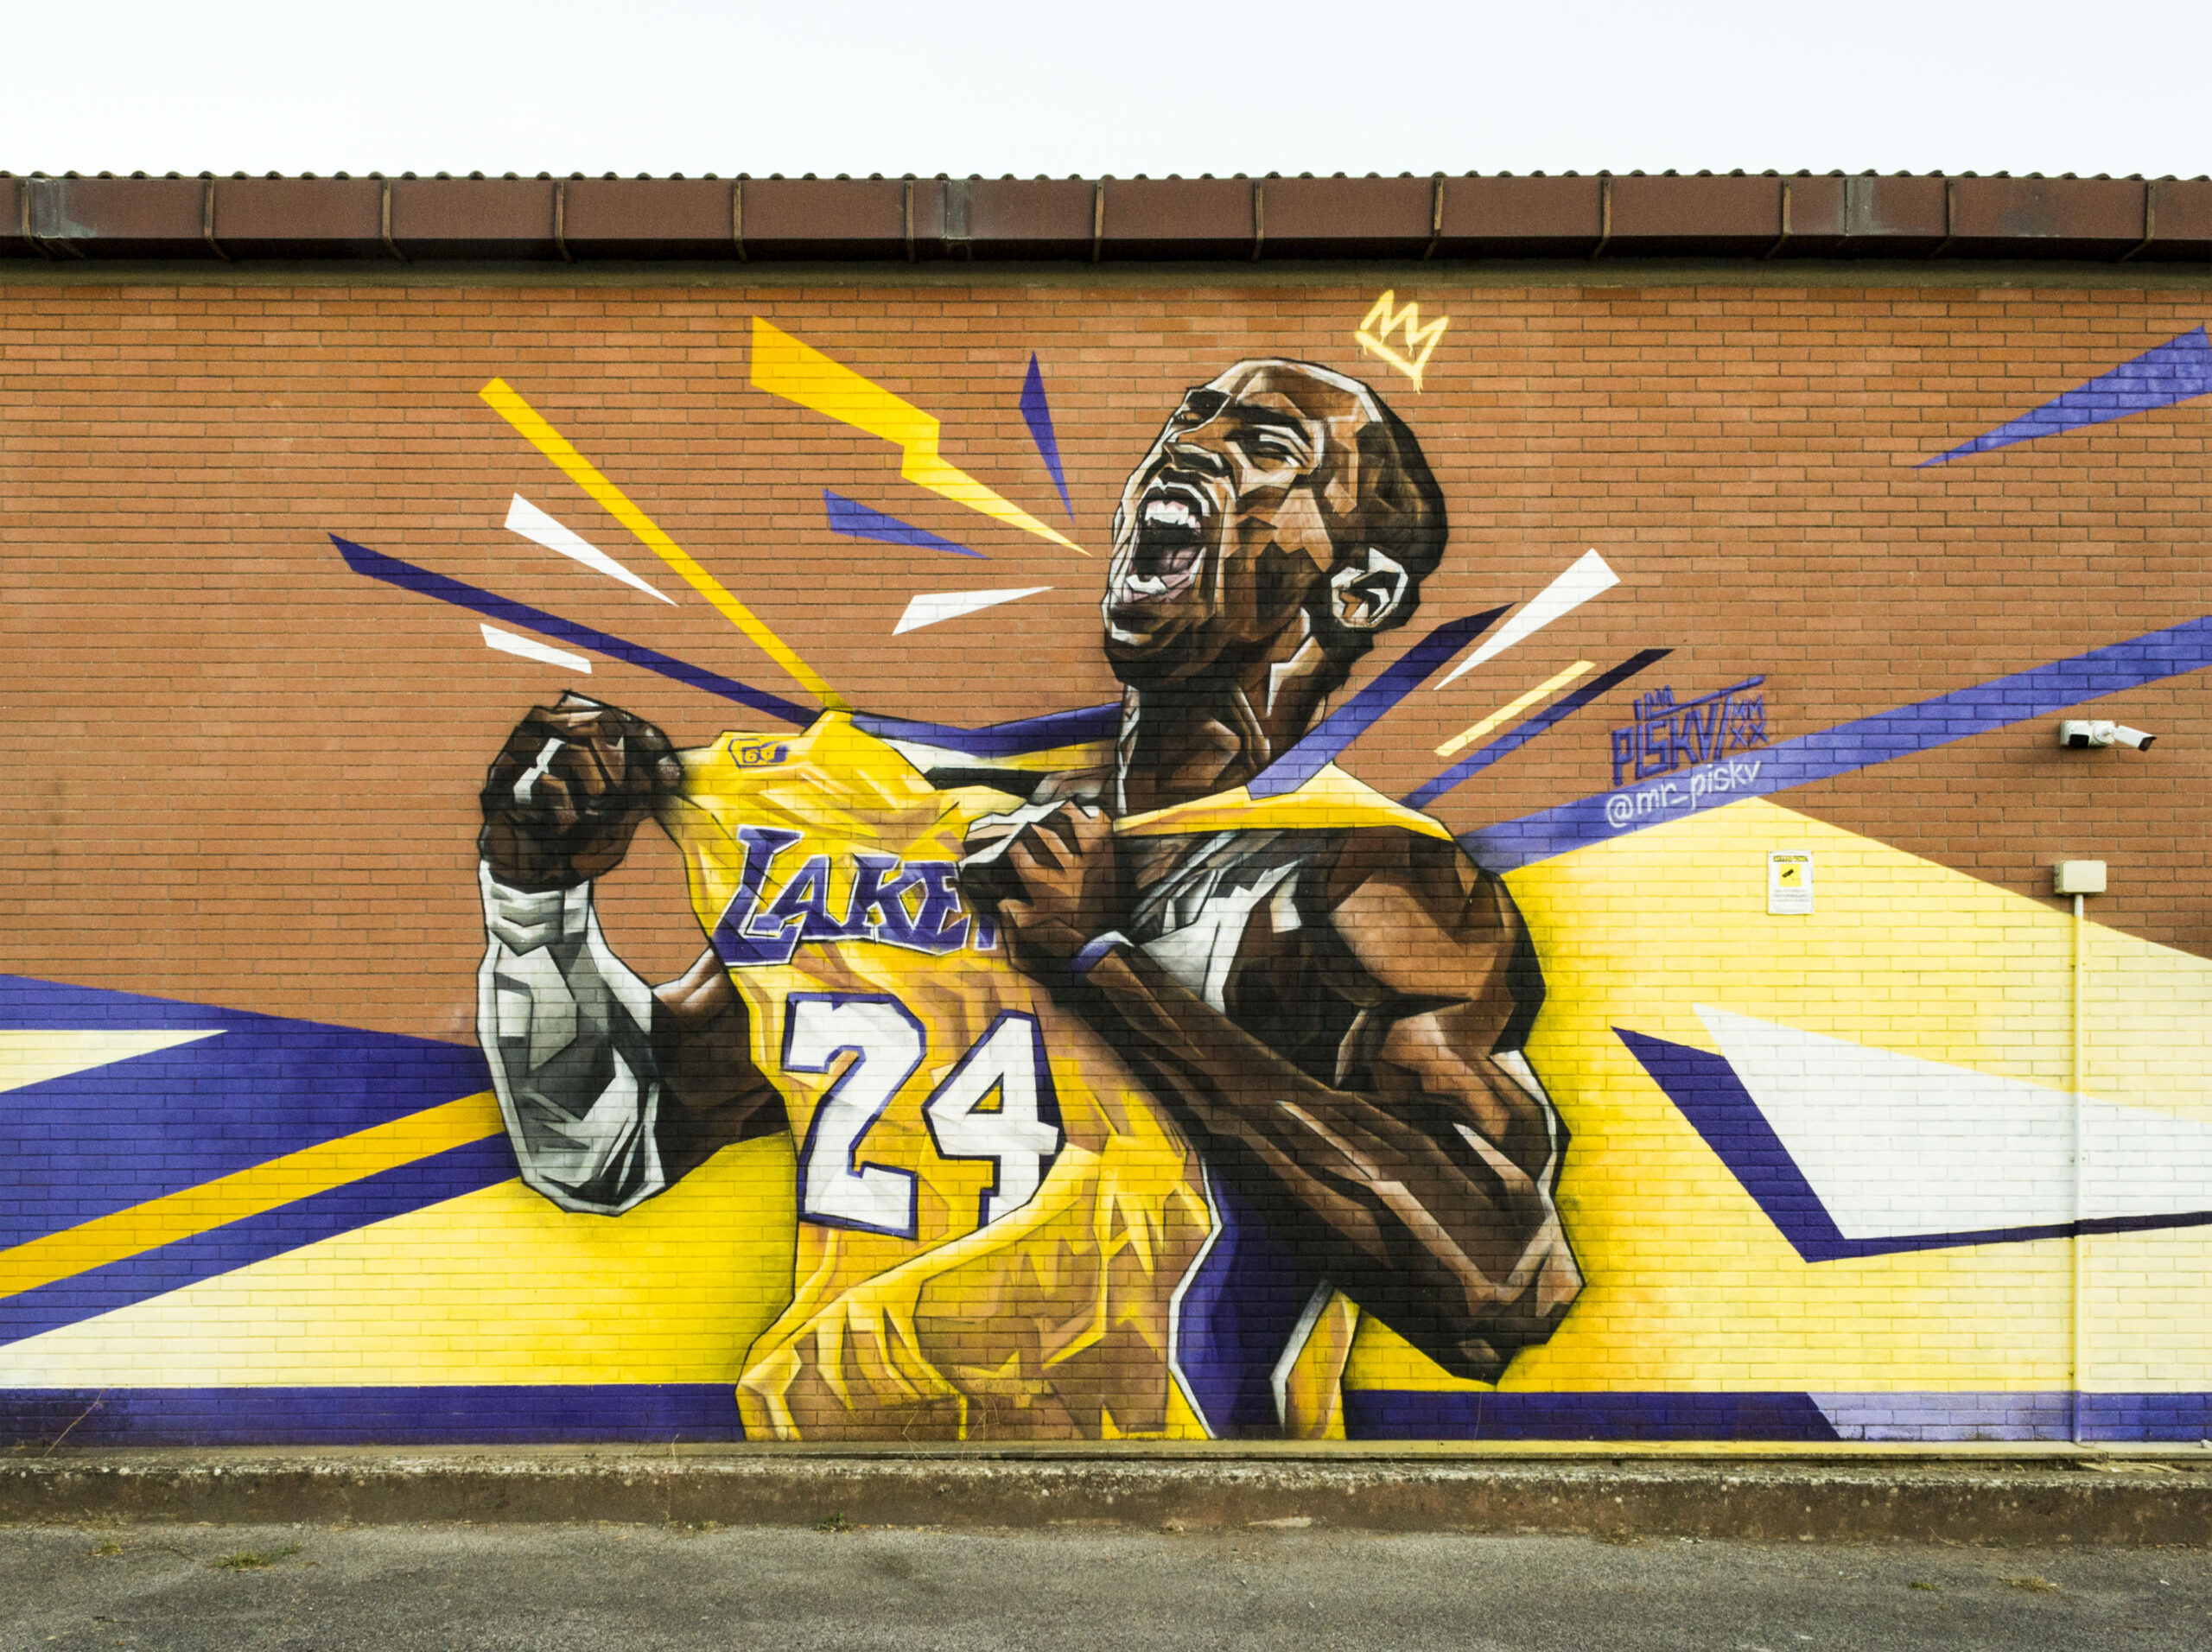 La Street Art Di Piskv E Il Murales Di Kobe A Roma Il Basket Secondo Mez